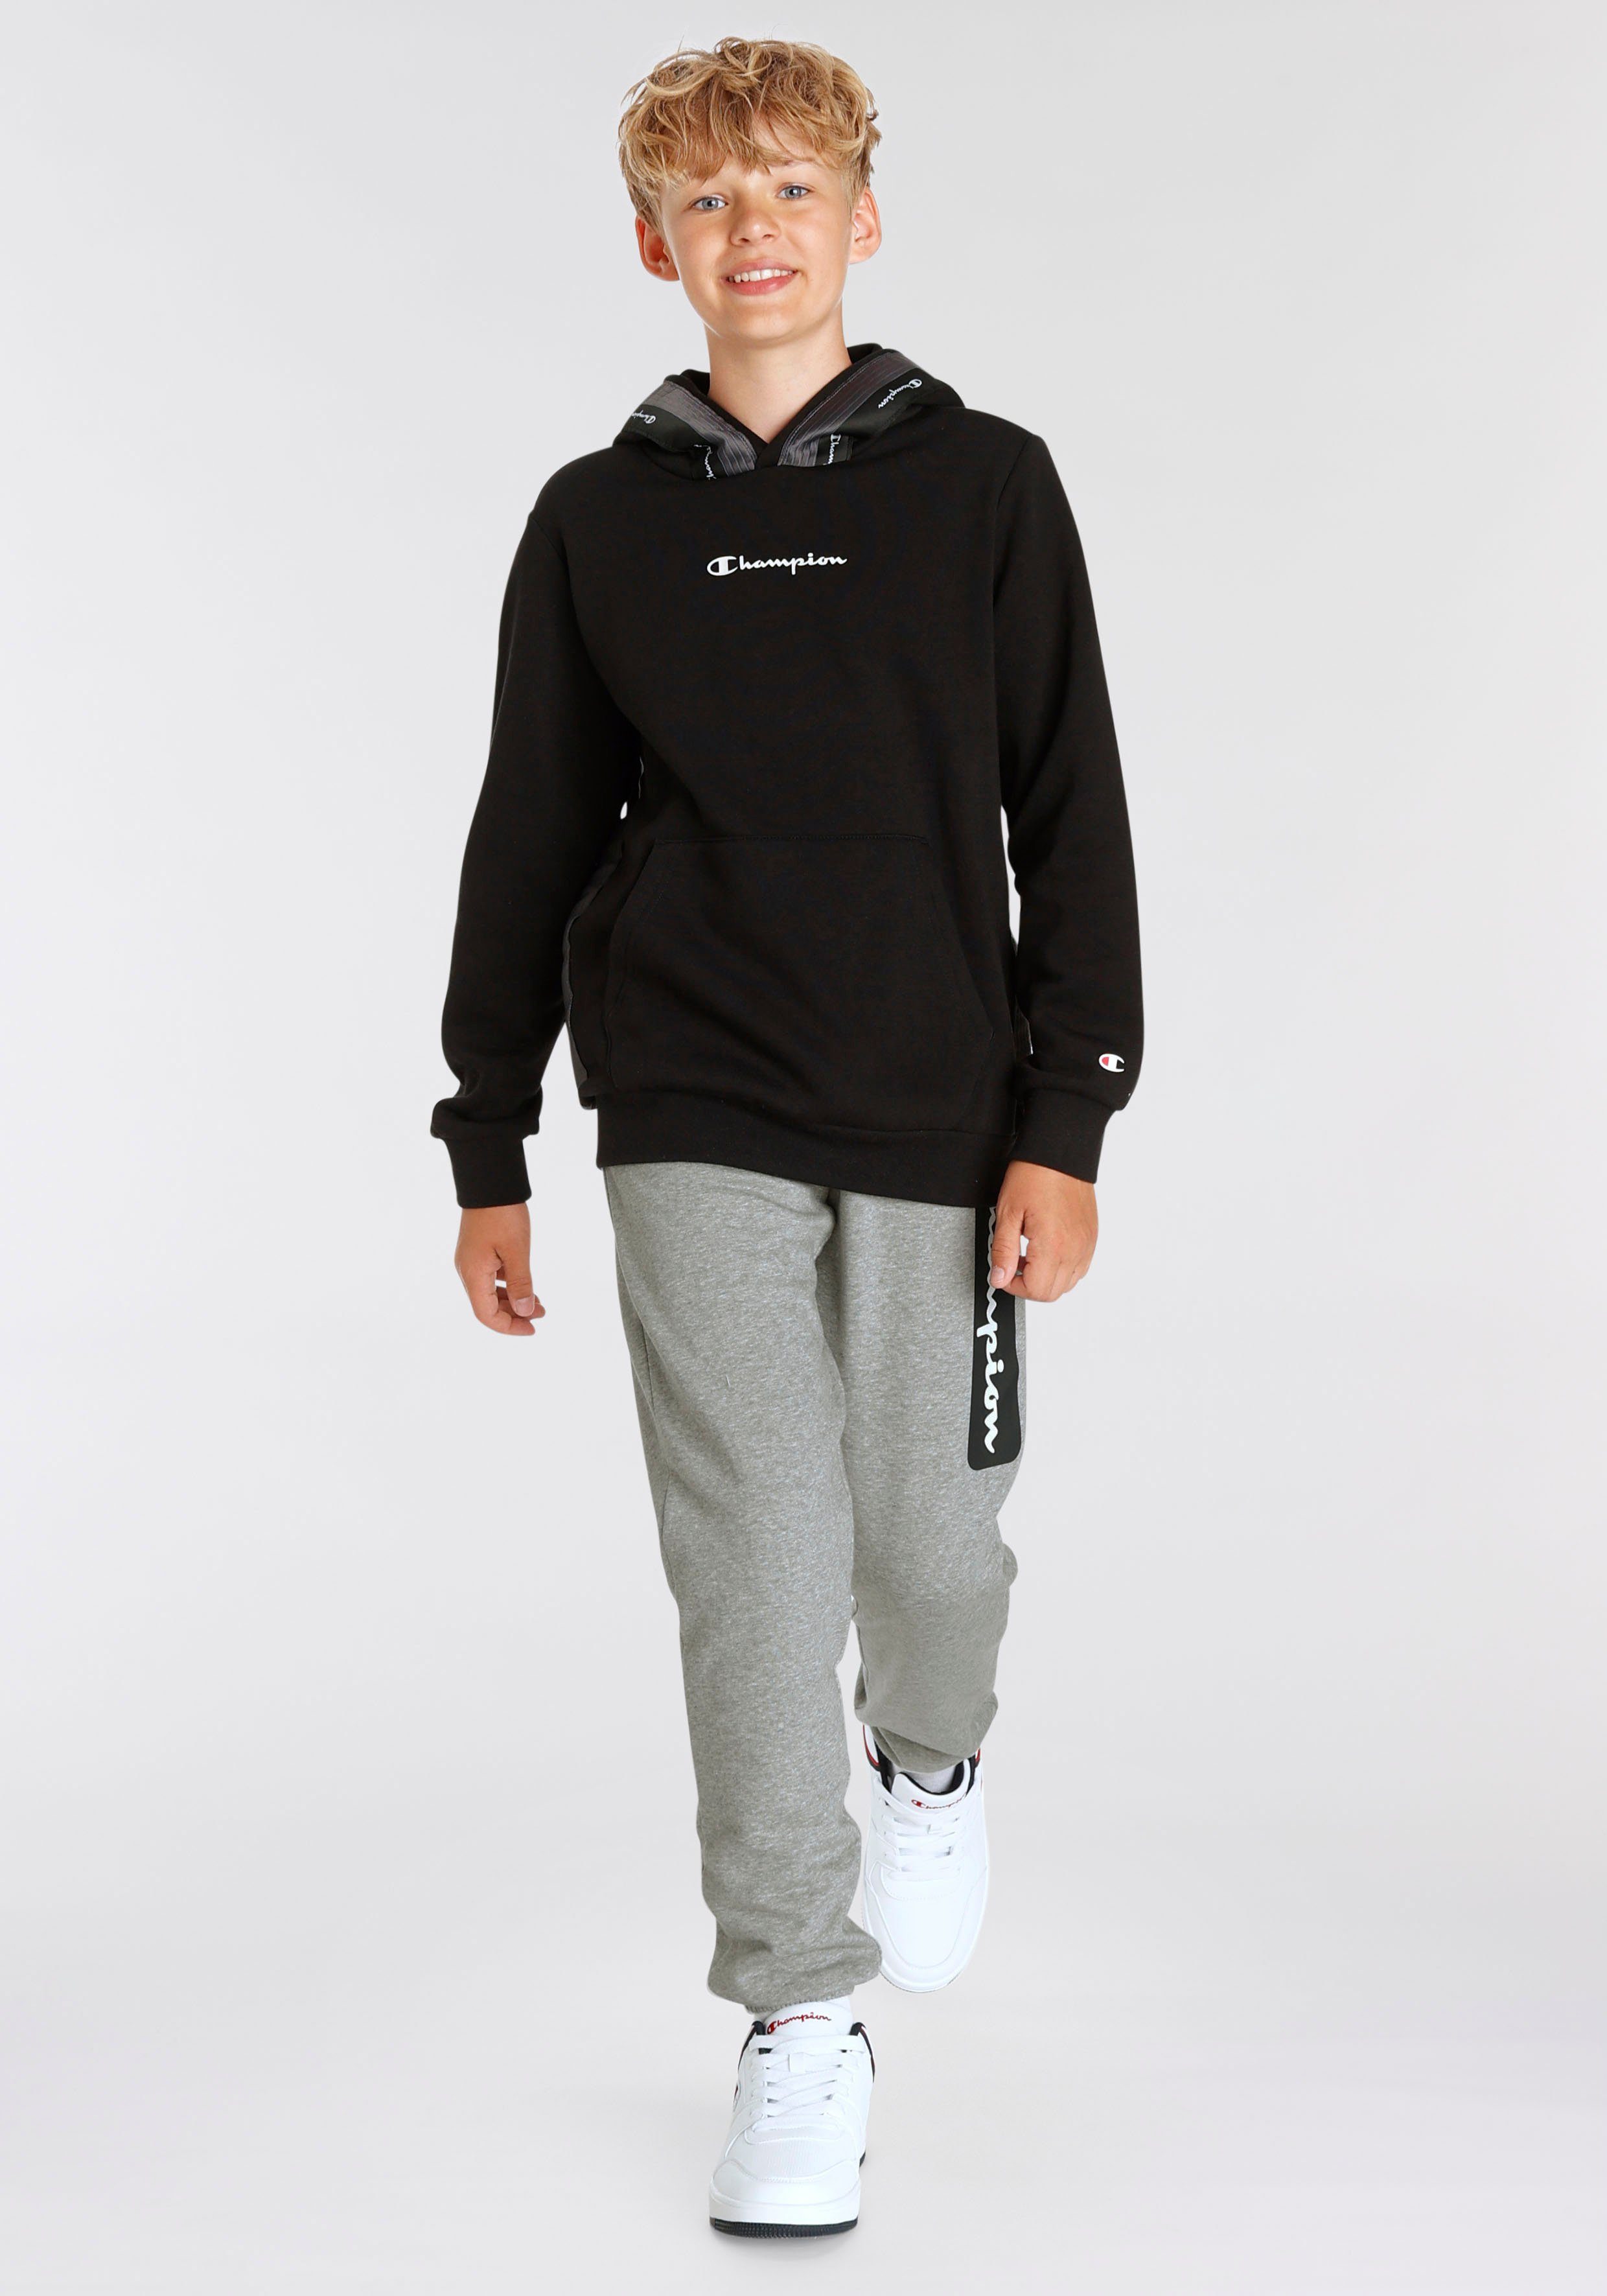 Hooded schwarz - Kapuzensweatshirt Tape Sweatshirt Champion für Kinder